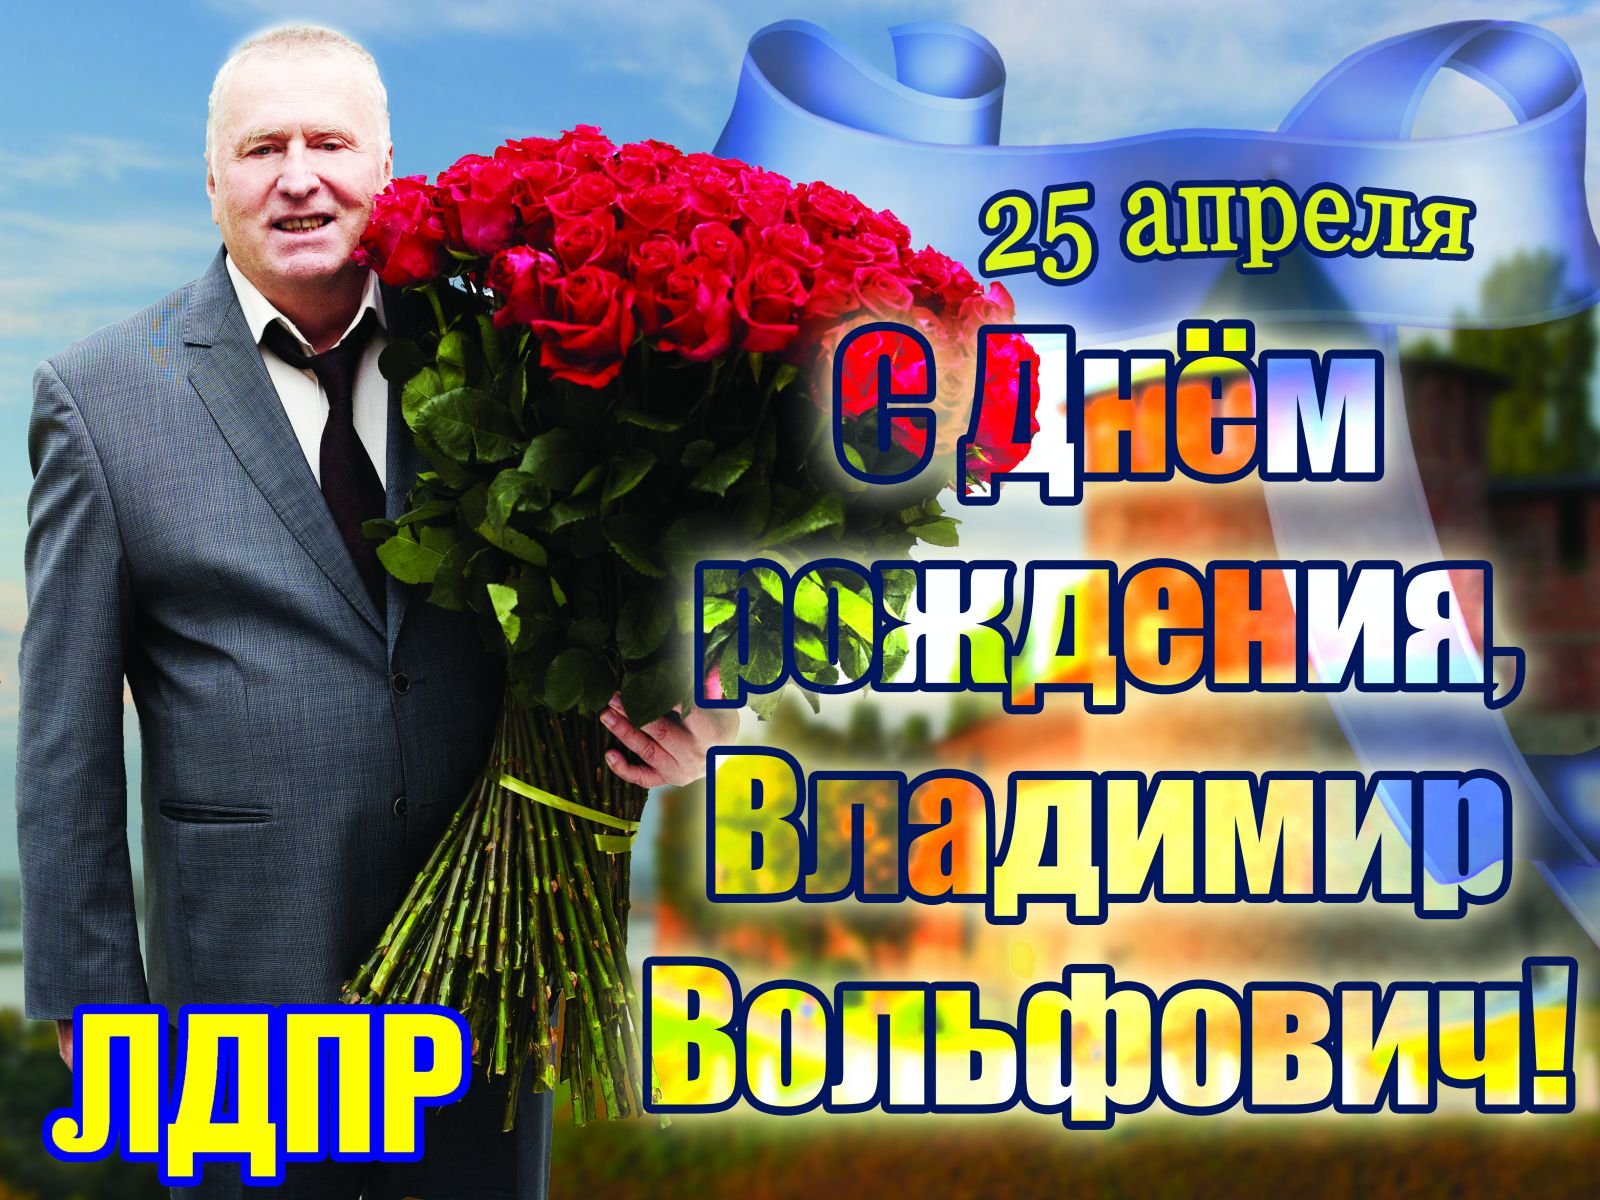 Поздравление с 8 марта от Жириновского В.В.2